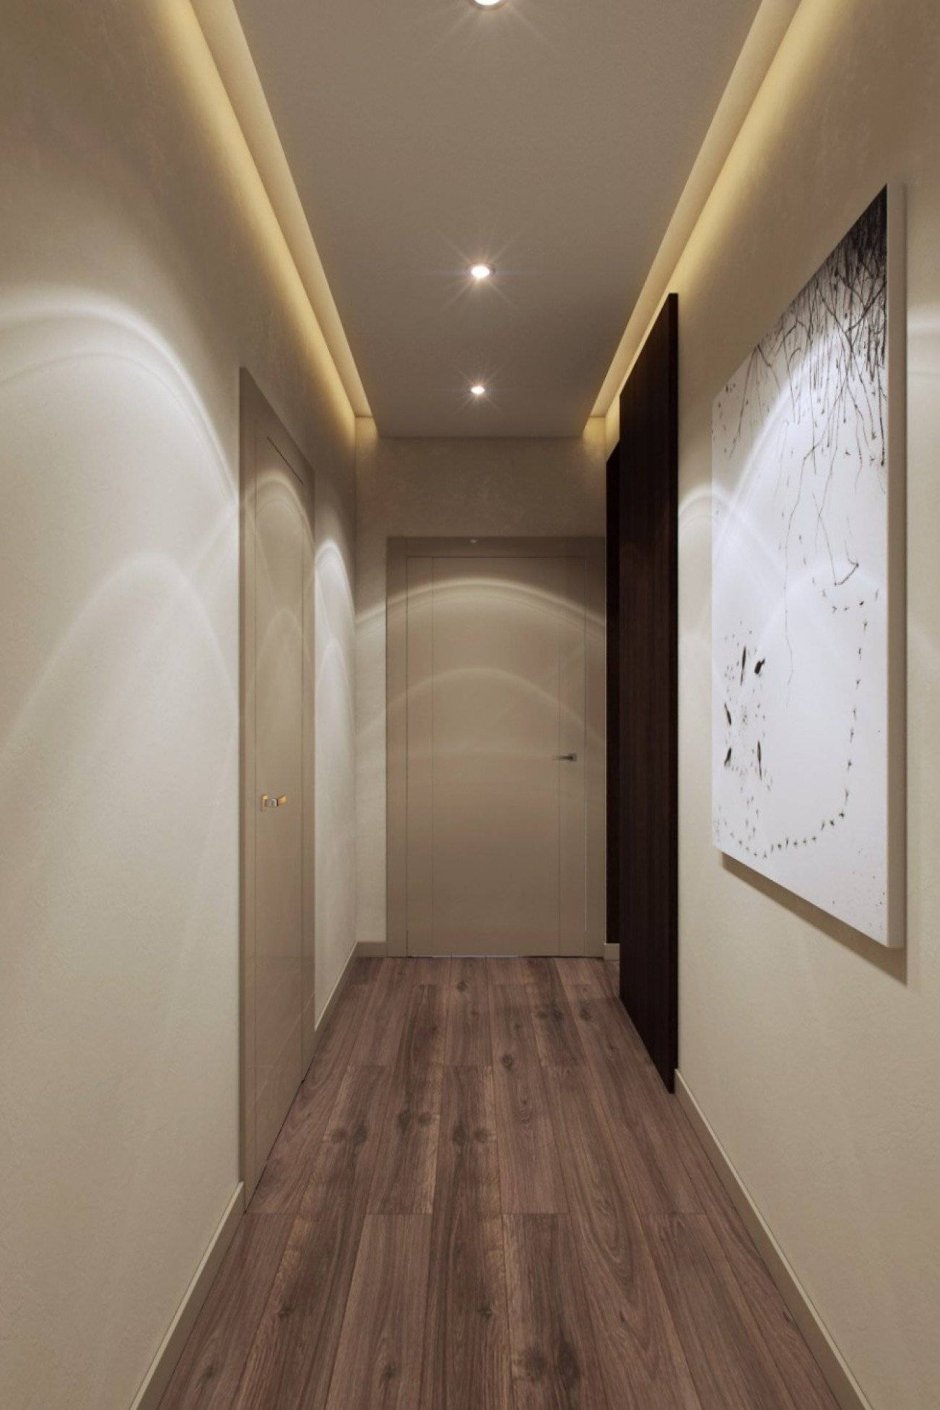 Дизайн потолка в коридоре